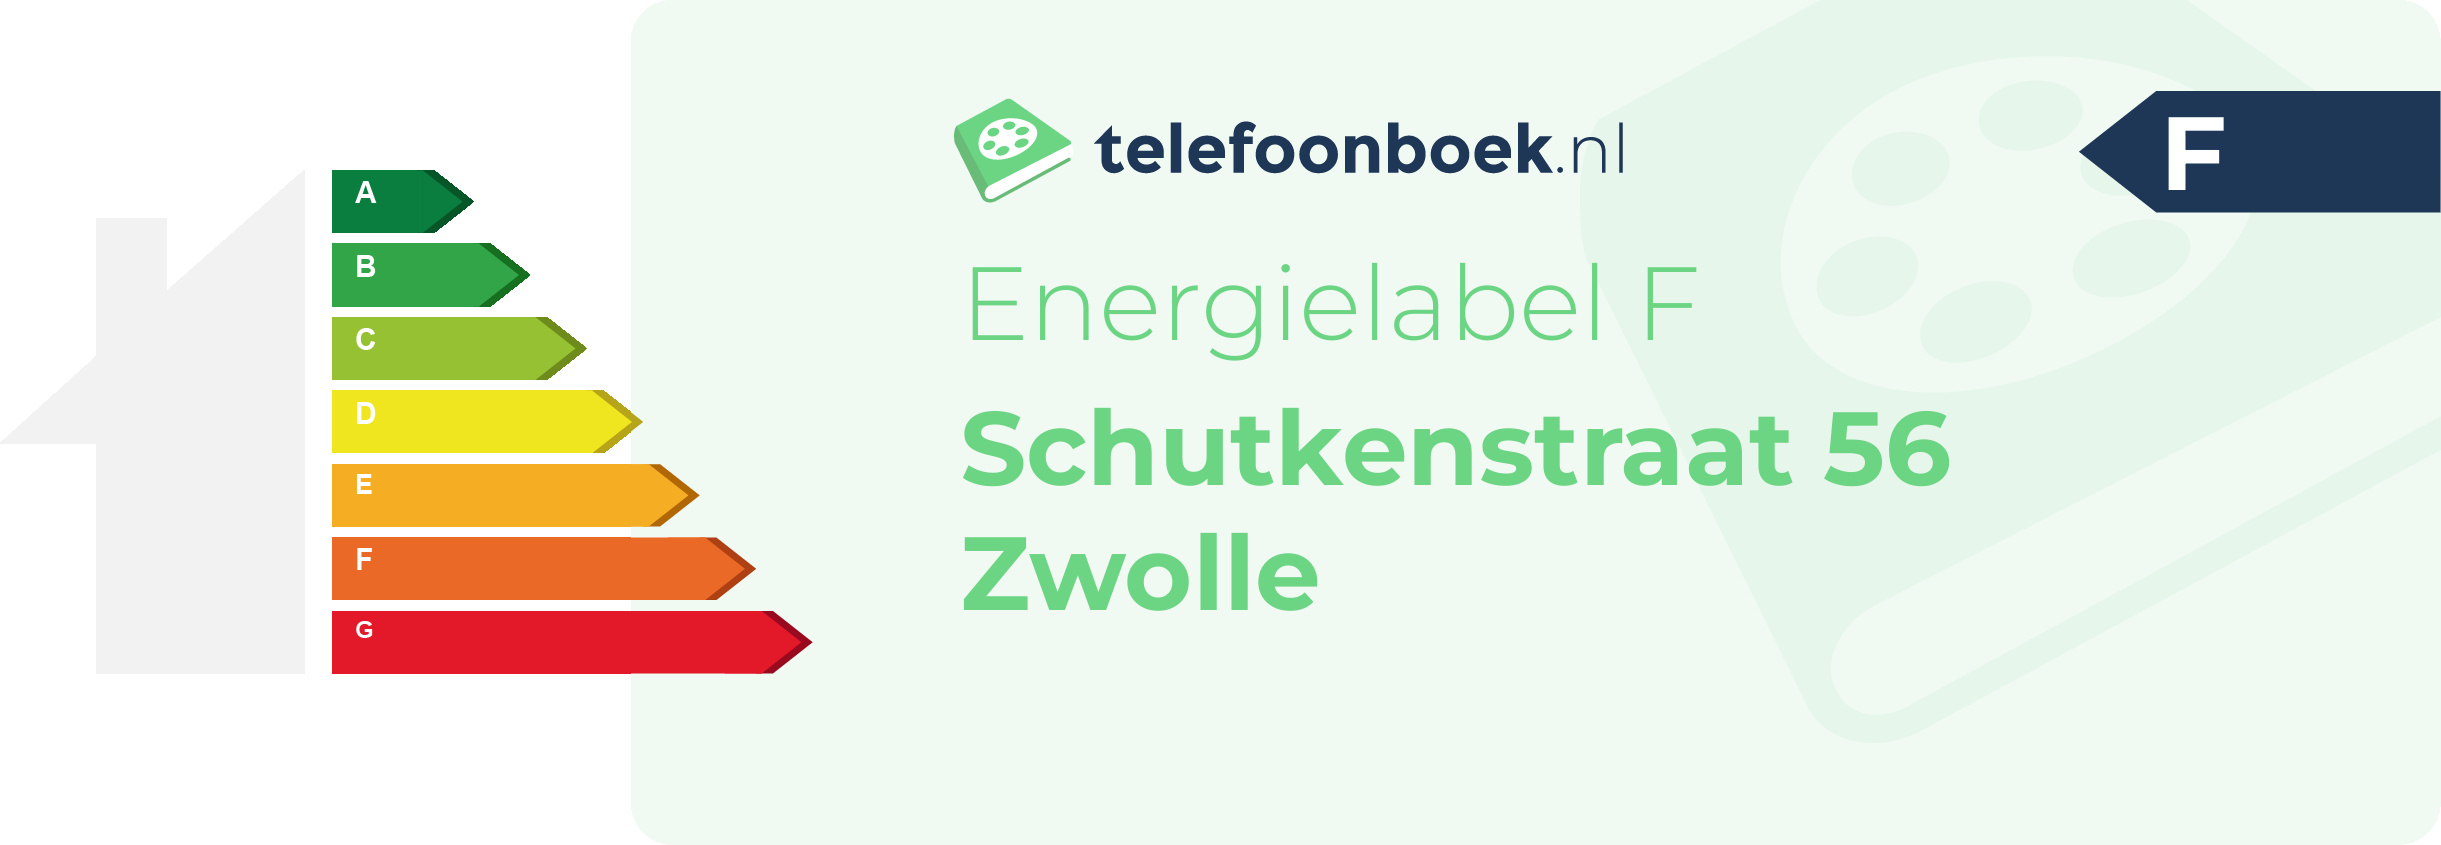 Energielabel Schutkenstraat 56 Zwolle